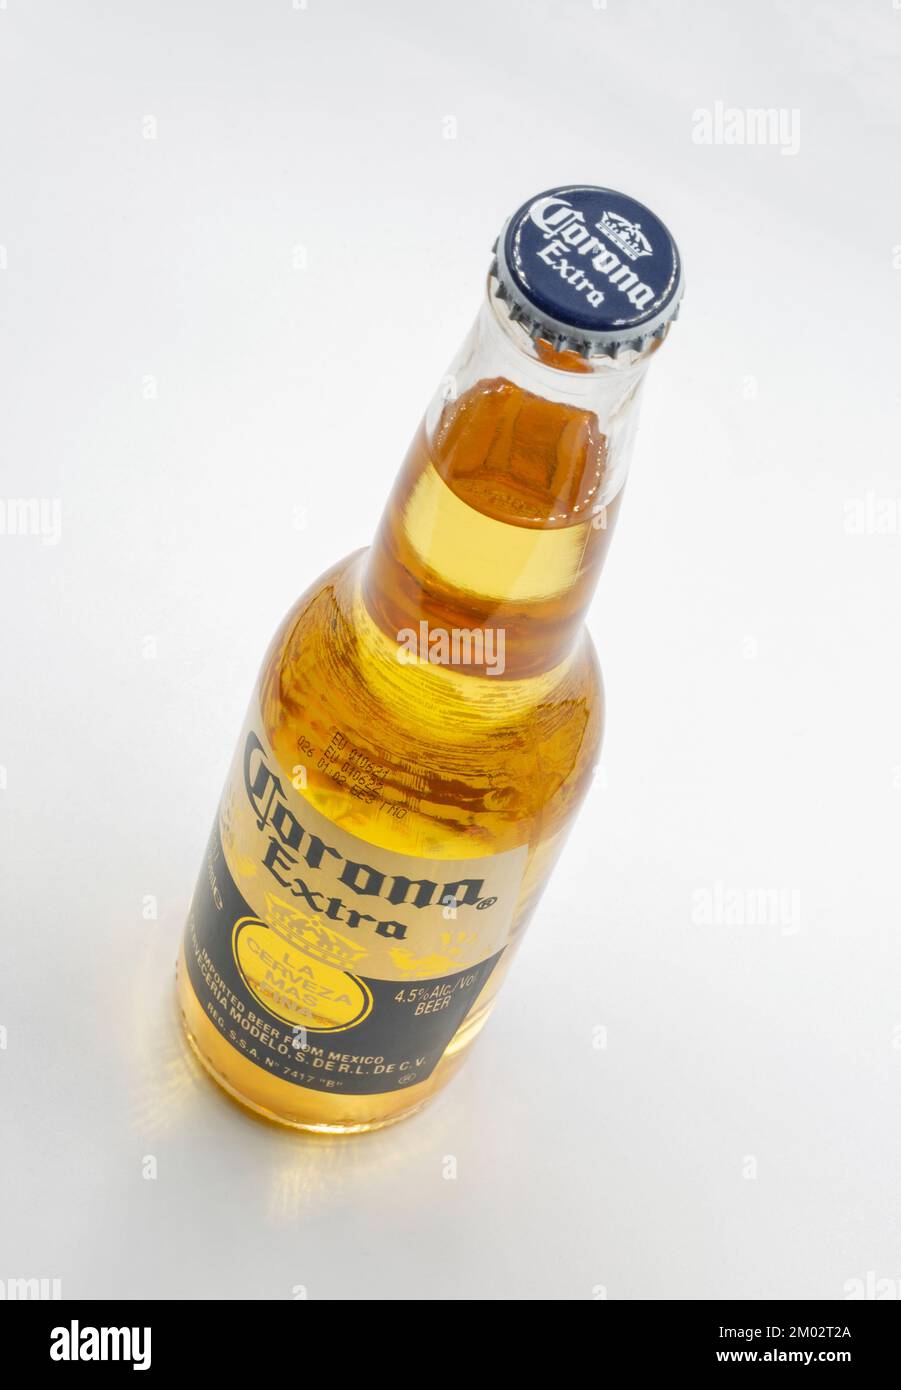 Kiev, Ukraine - 27 novembre 2021: Studio Shoot de Corona Extra bouteille de bière gros plan sur blanc. Corona Extra est produit au Mexique et exporté à tous o Banque D'Images